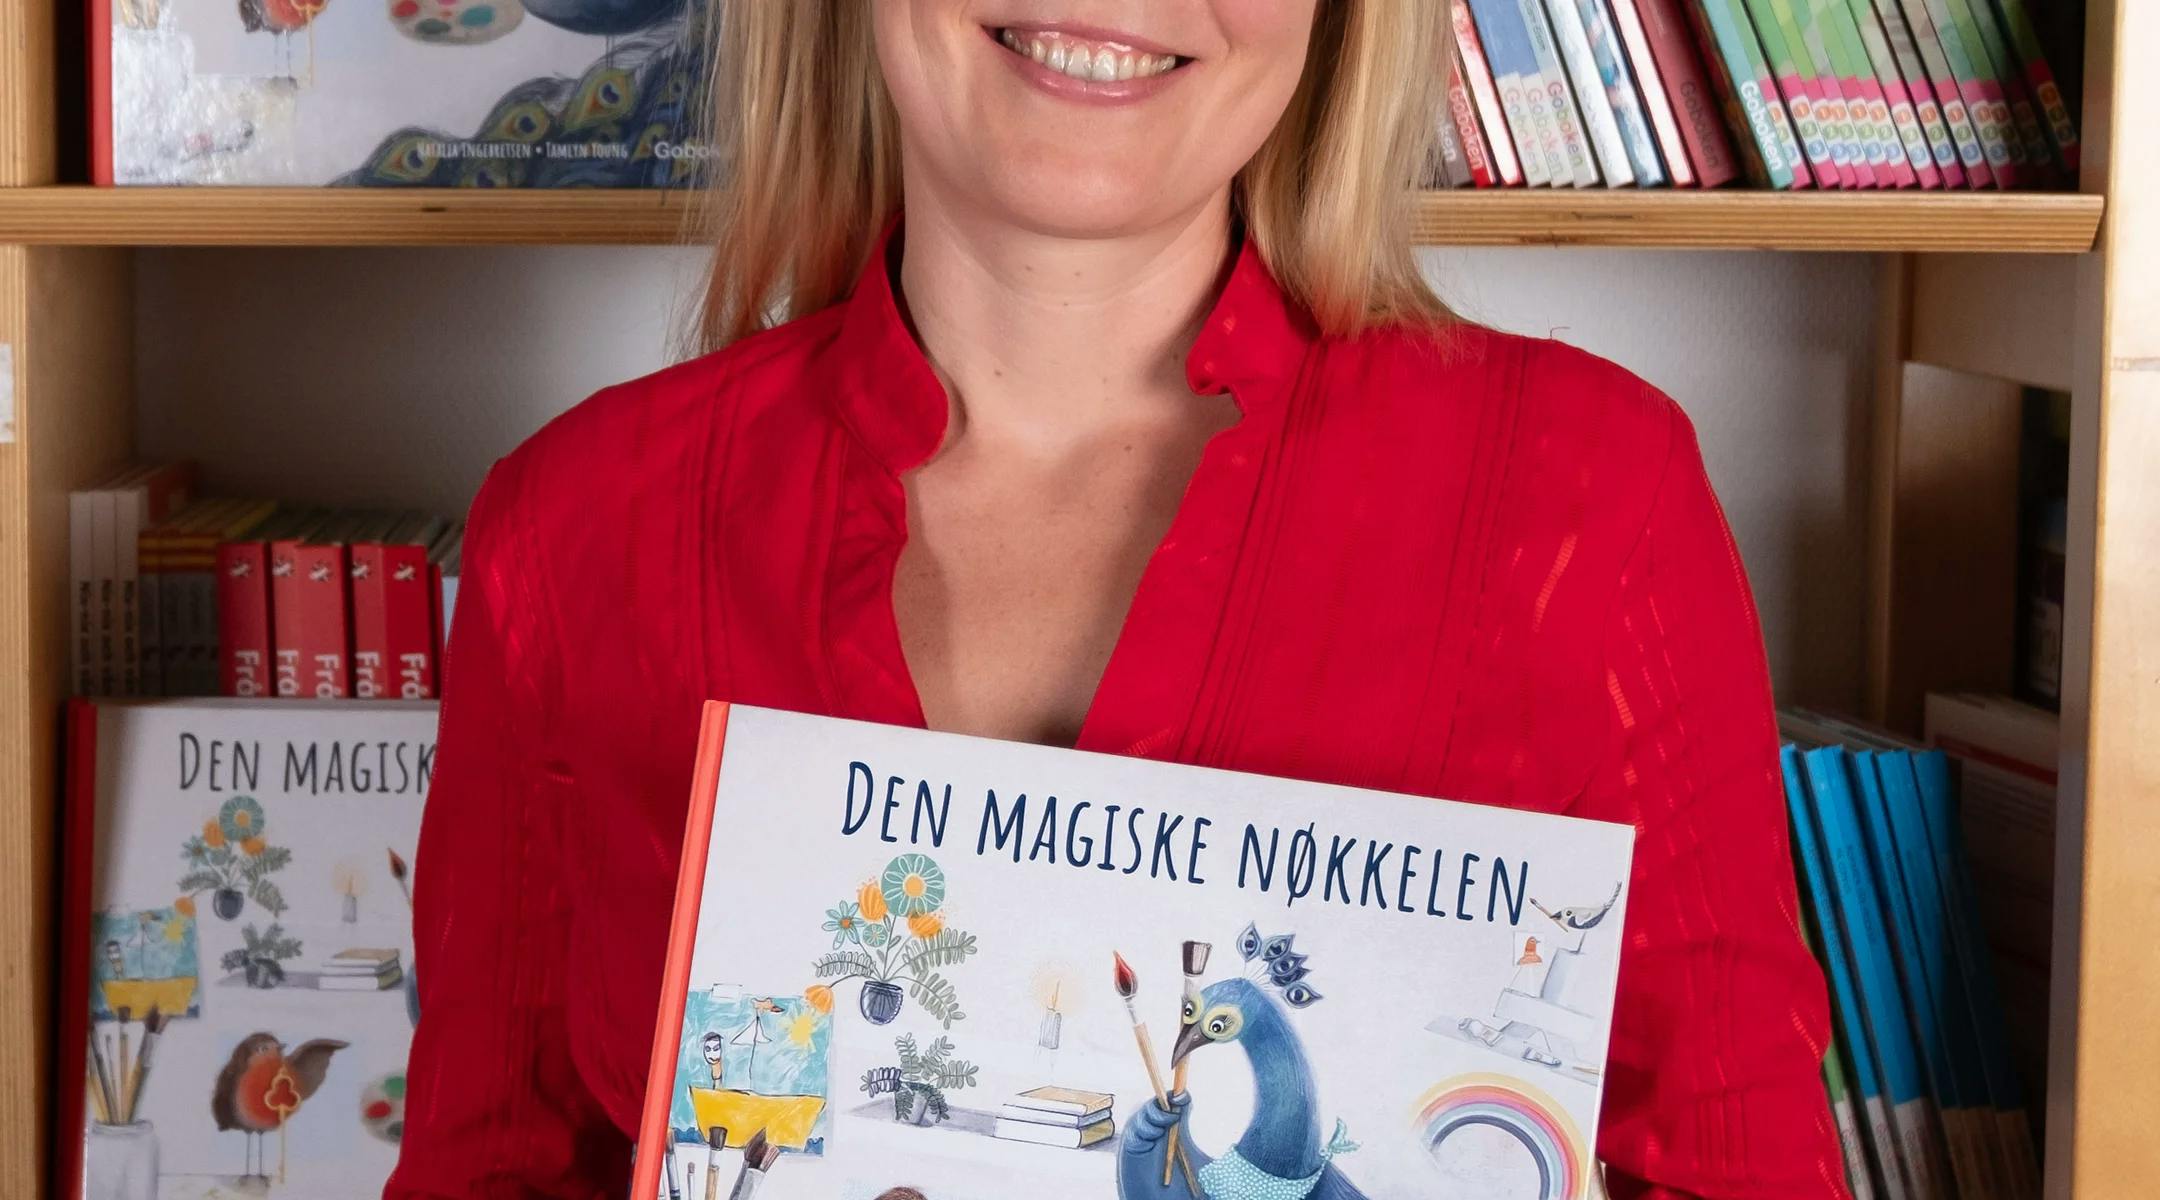 Natalia Ingebretsen med boka si "Den magiske nøkkelen".